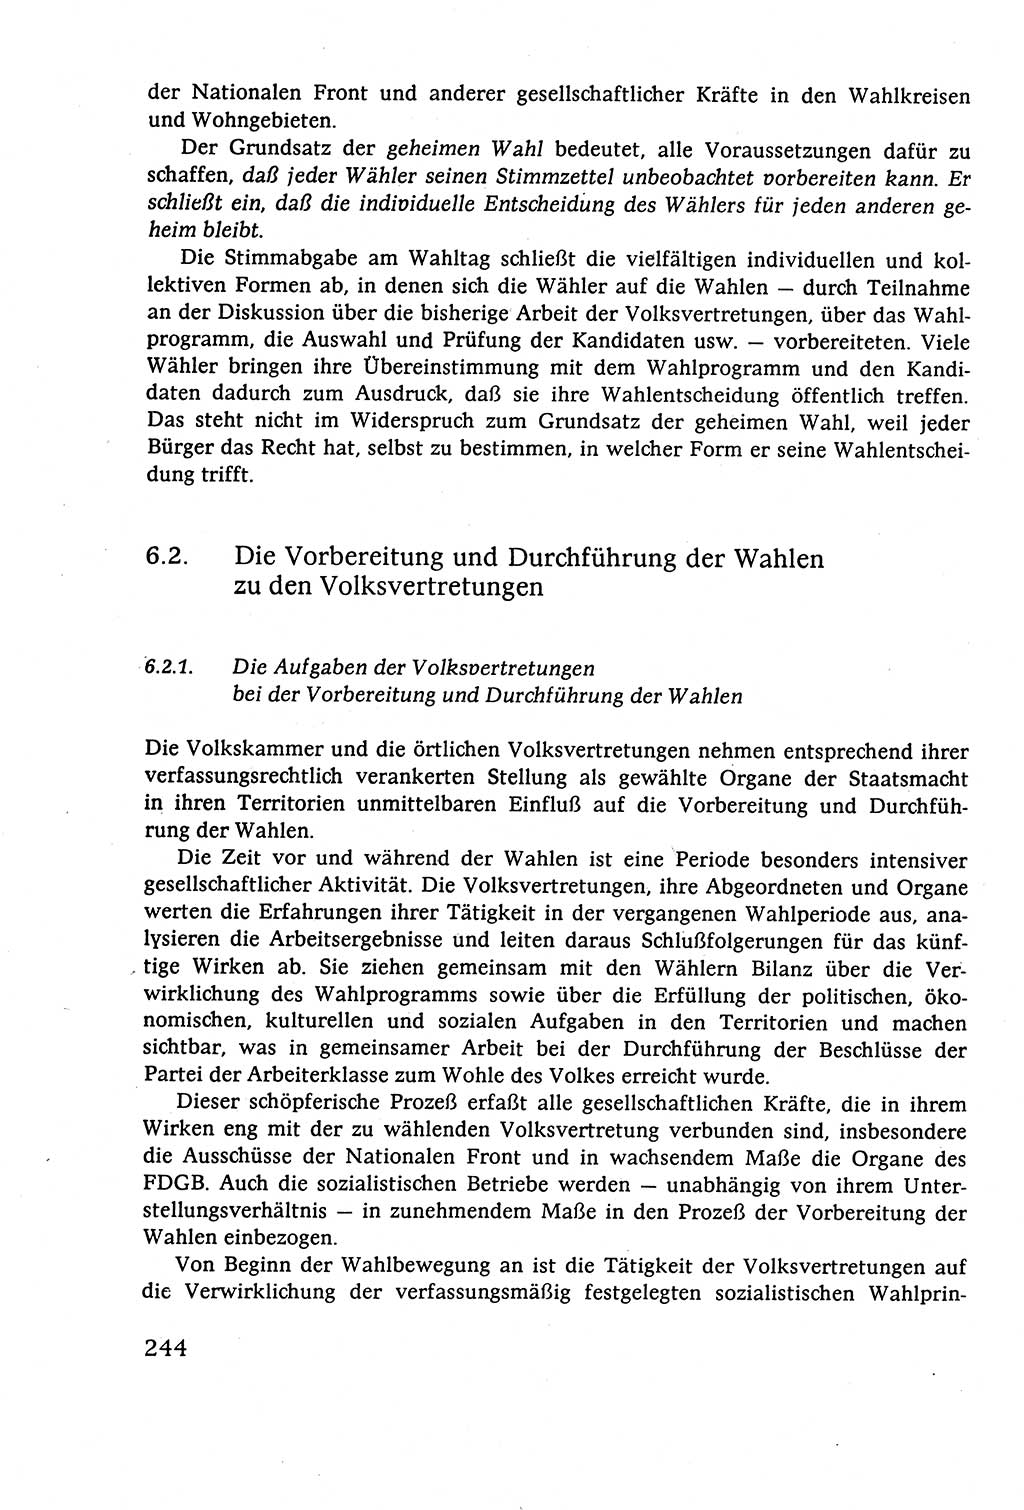 Staatsrecht der DDR (Deutsche Demokratische Republik), Lehrbuch 1977, Seite 244 (St.-R. DDR Lb. 1977, S. 244)